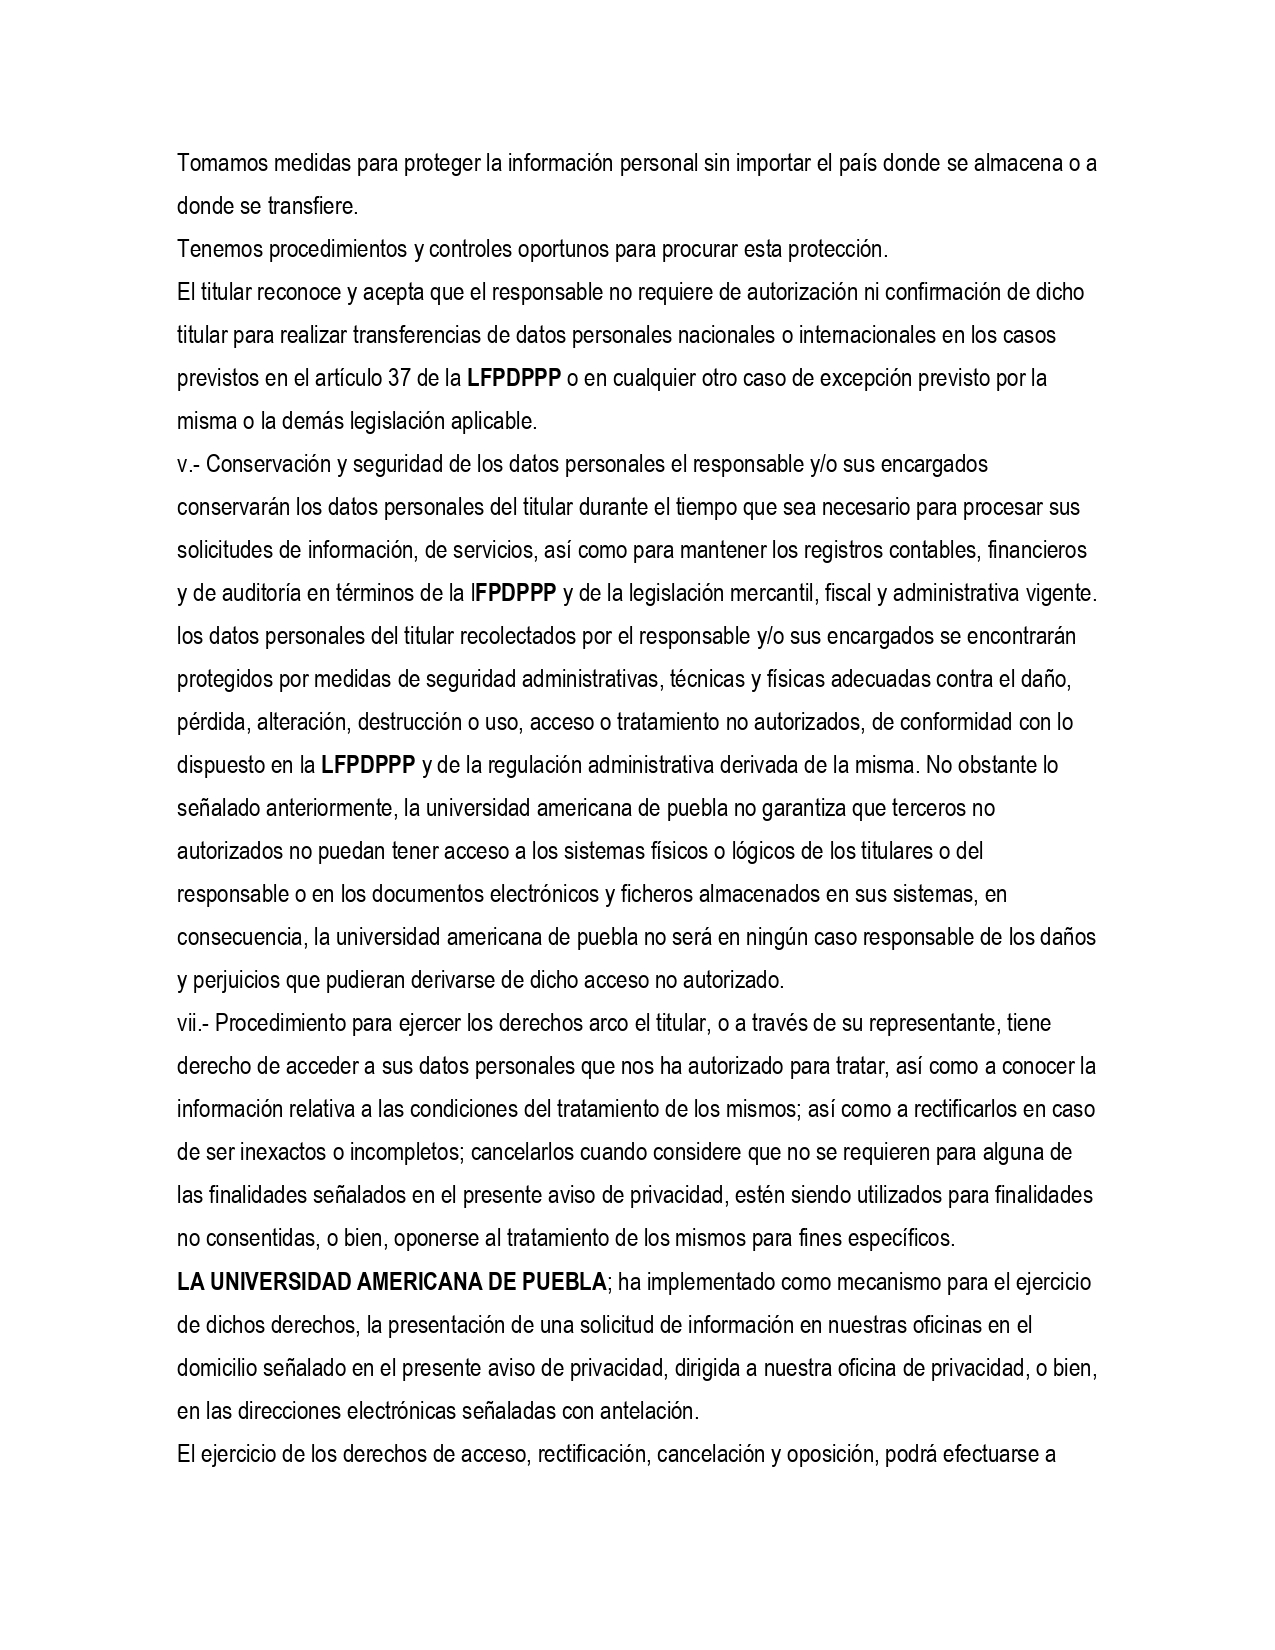 POLITICA DE PRIVACIDAD UAMP_page-0007